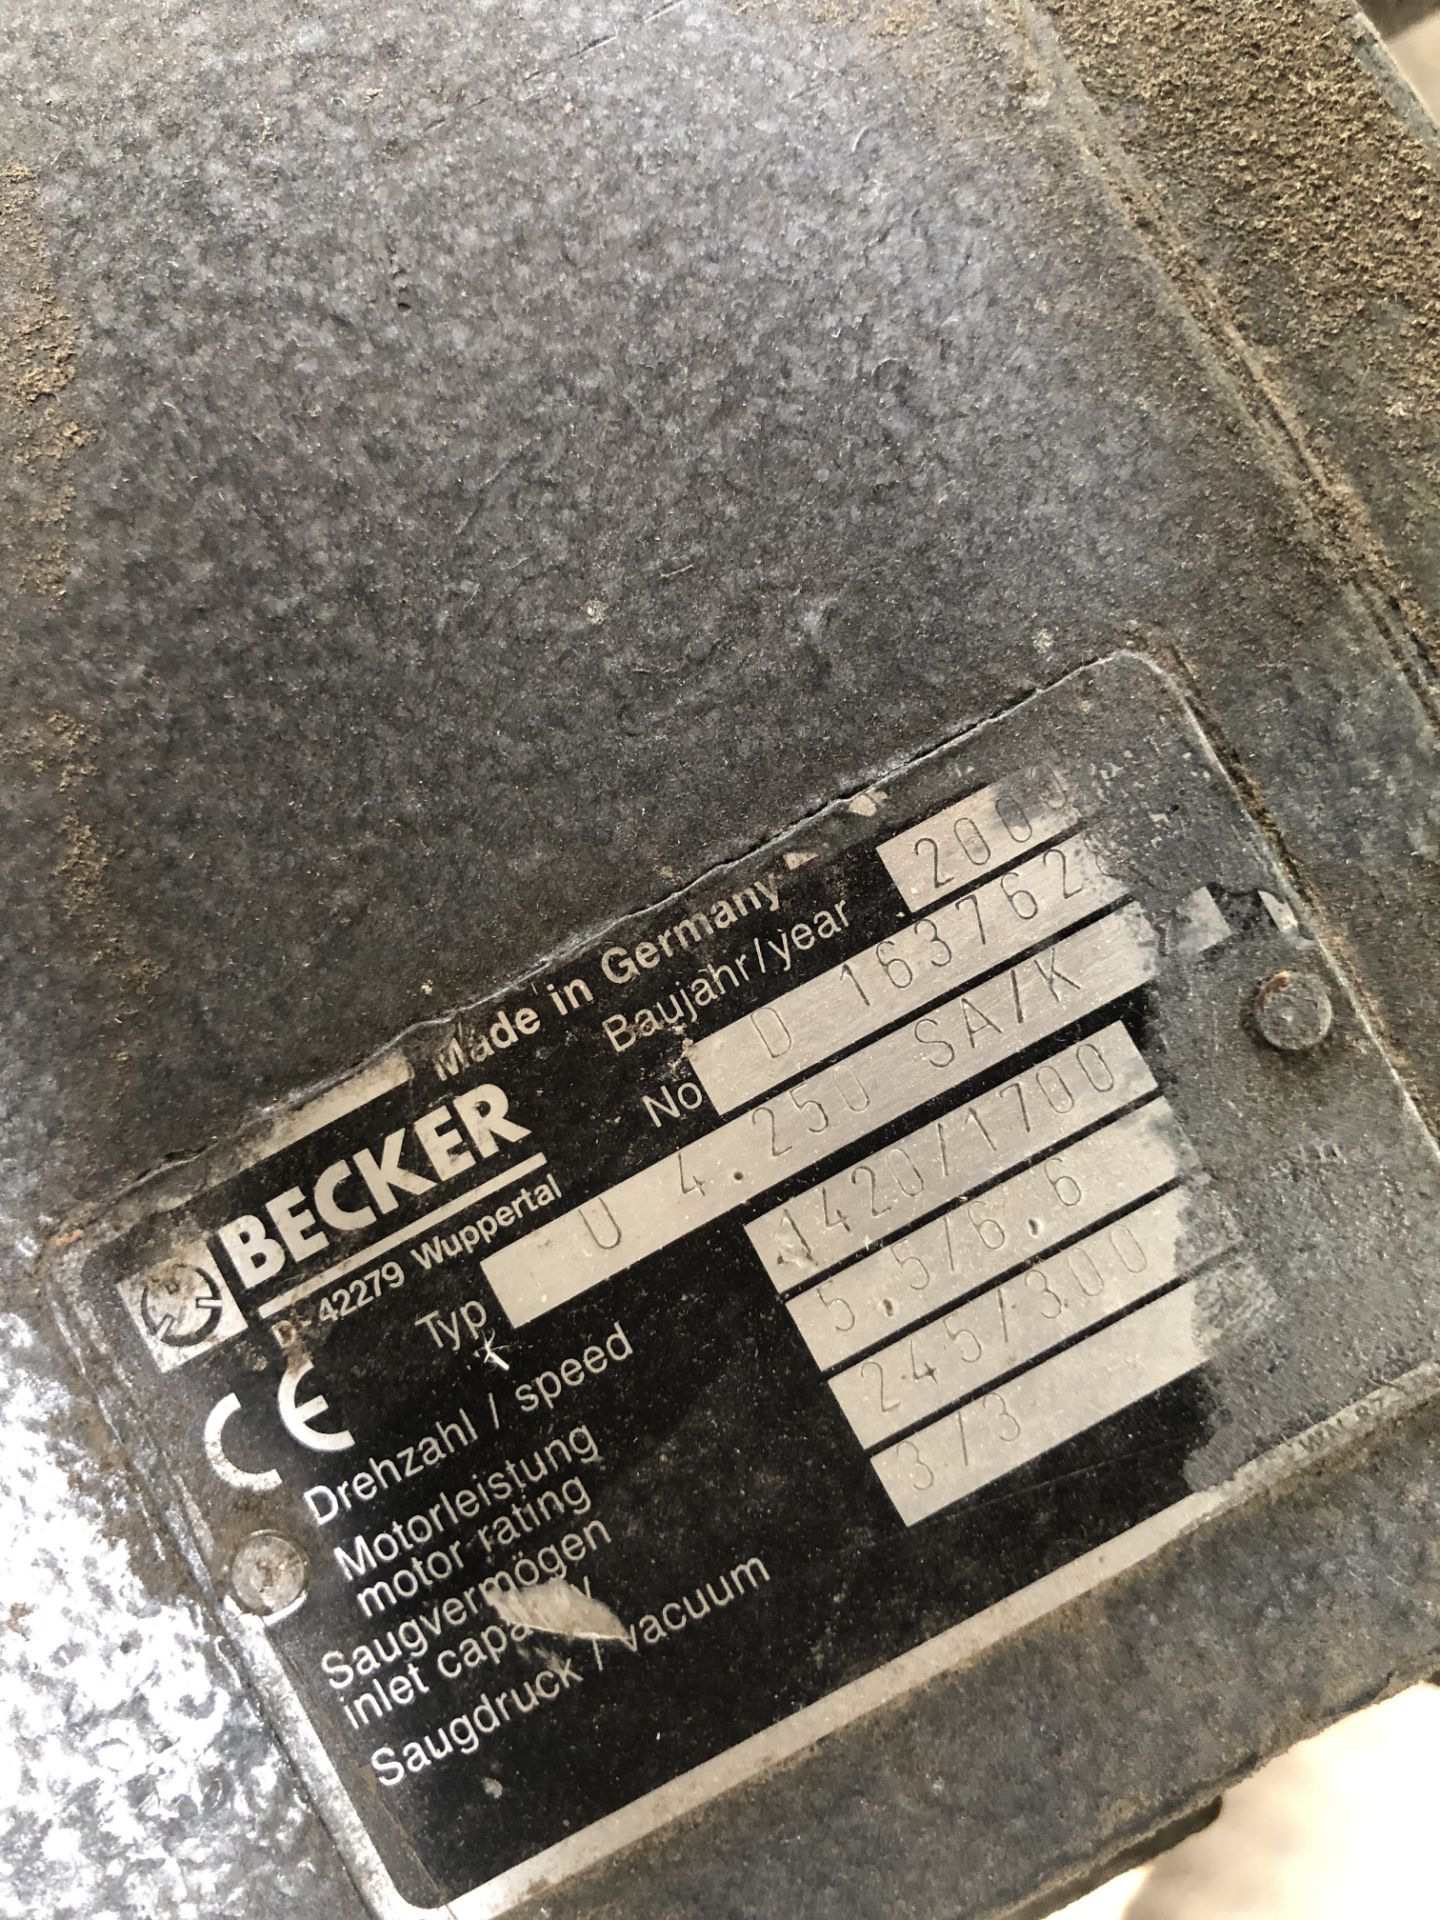 Becker U4.250SA/K Vacuum Pump, serial no. D 163762 - Image 3 of 4